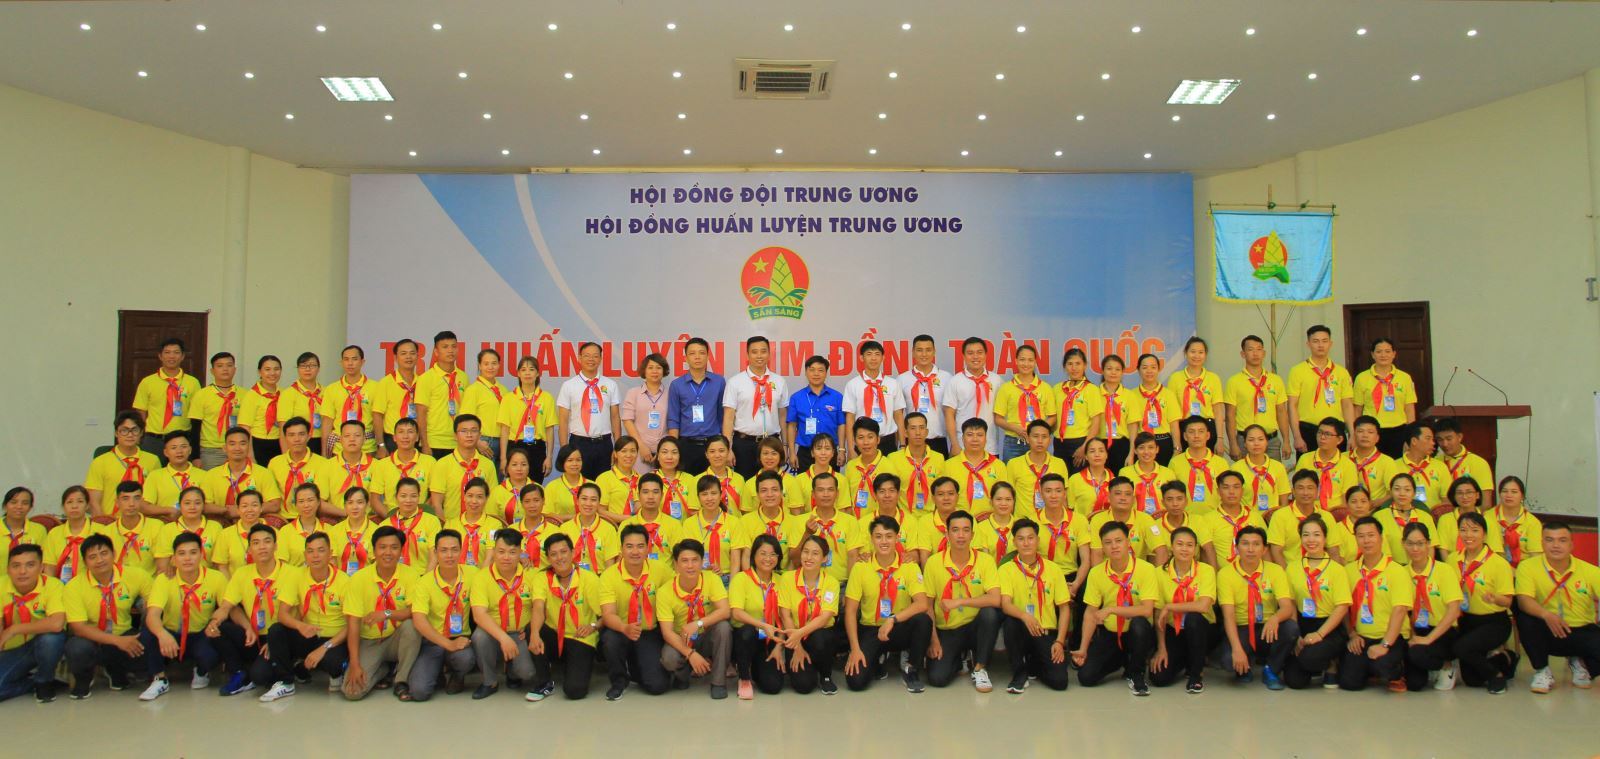 Khai mạc trại huấn luyện Kim Đồng toàn quốc năm 2020